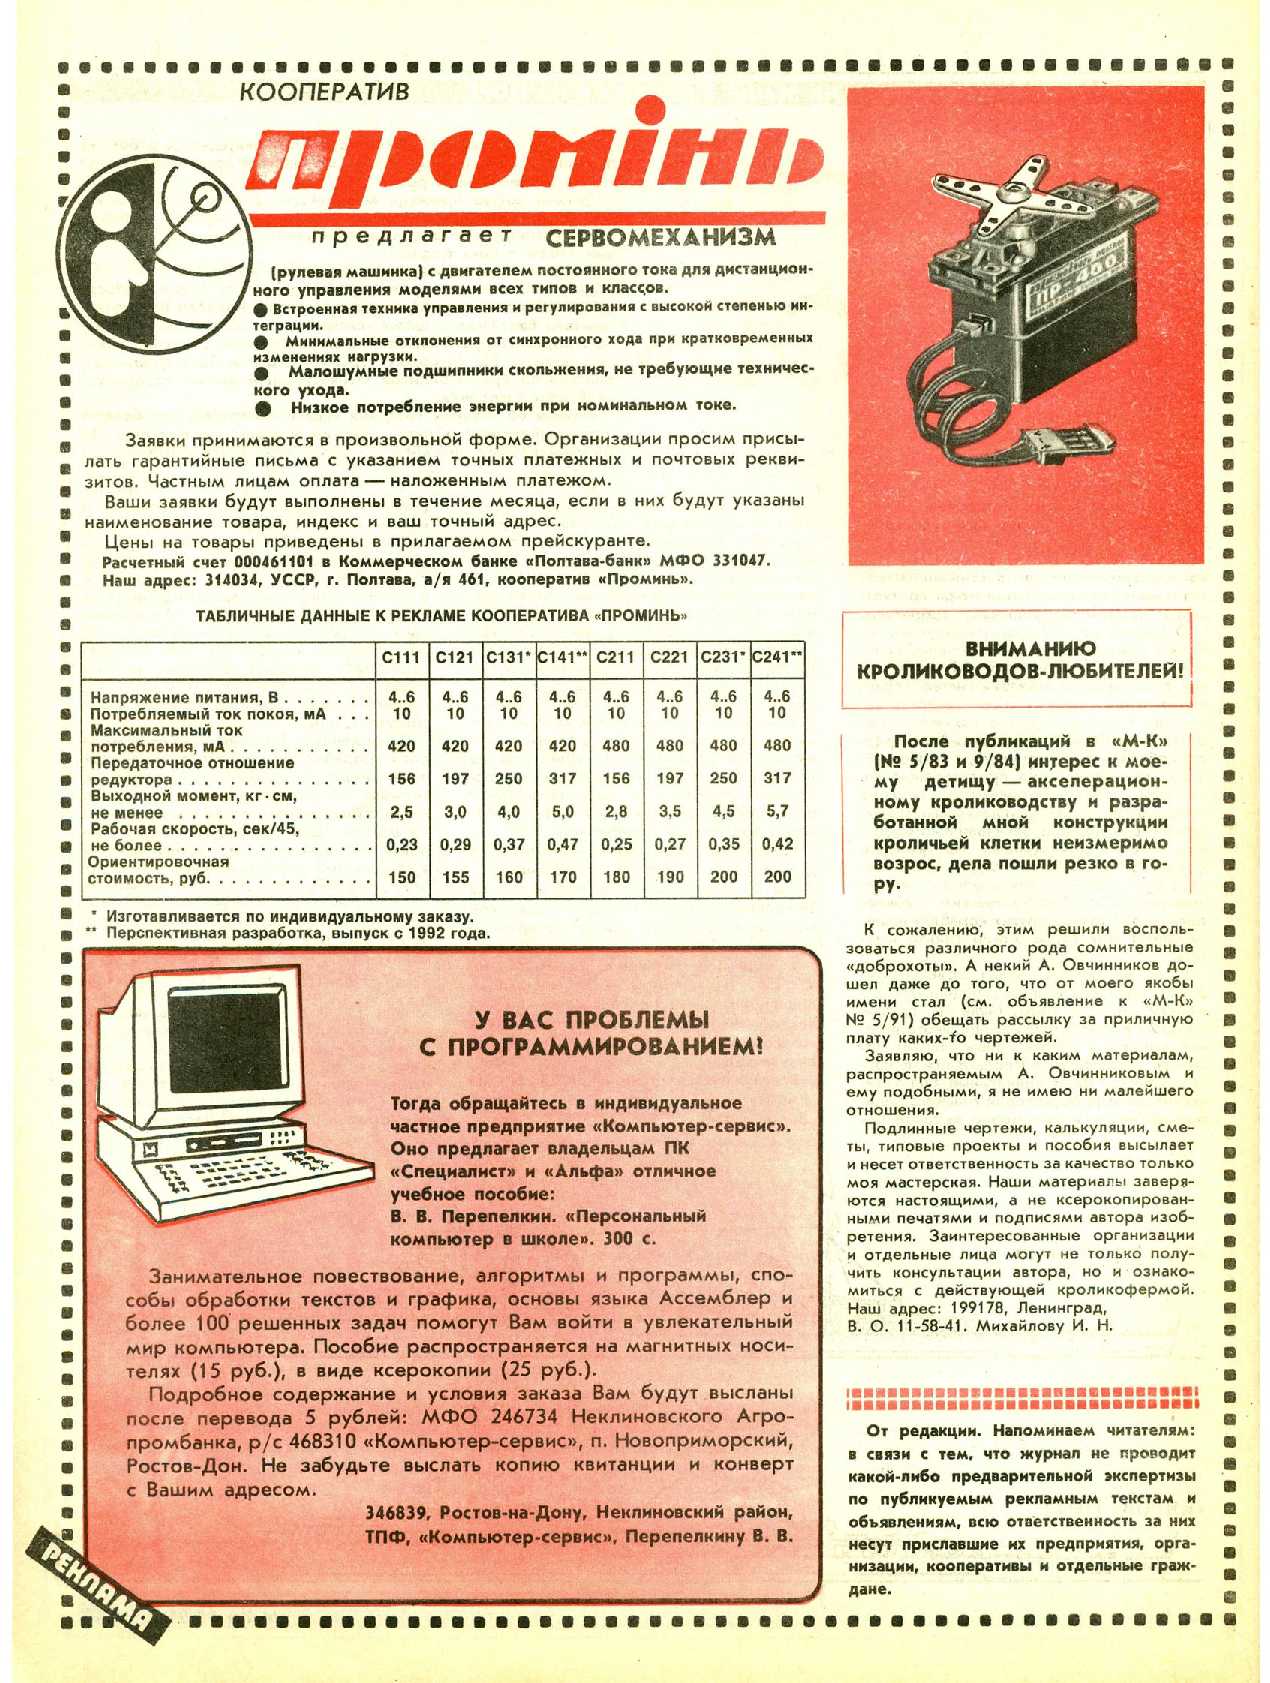 МК 11, 1991, 40 c.